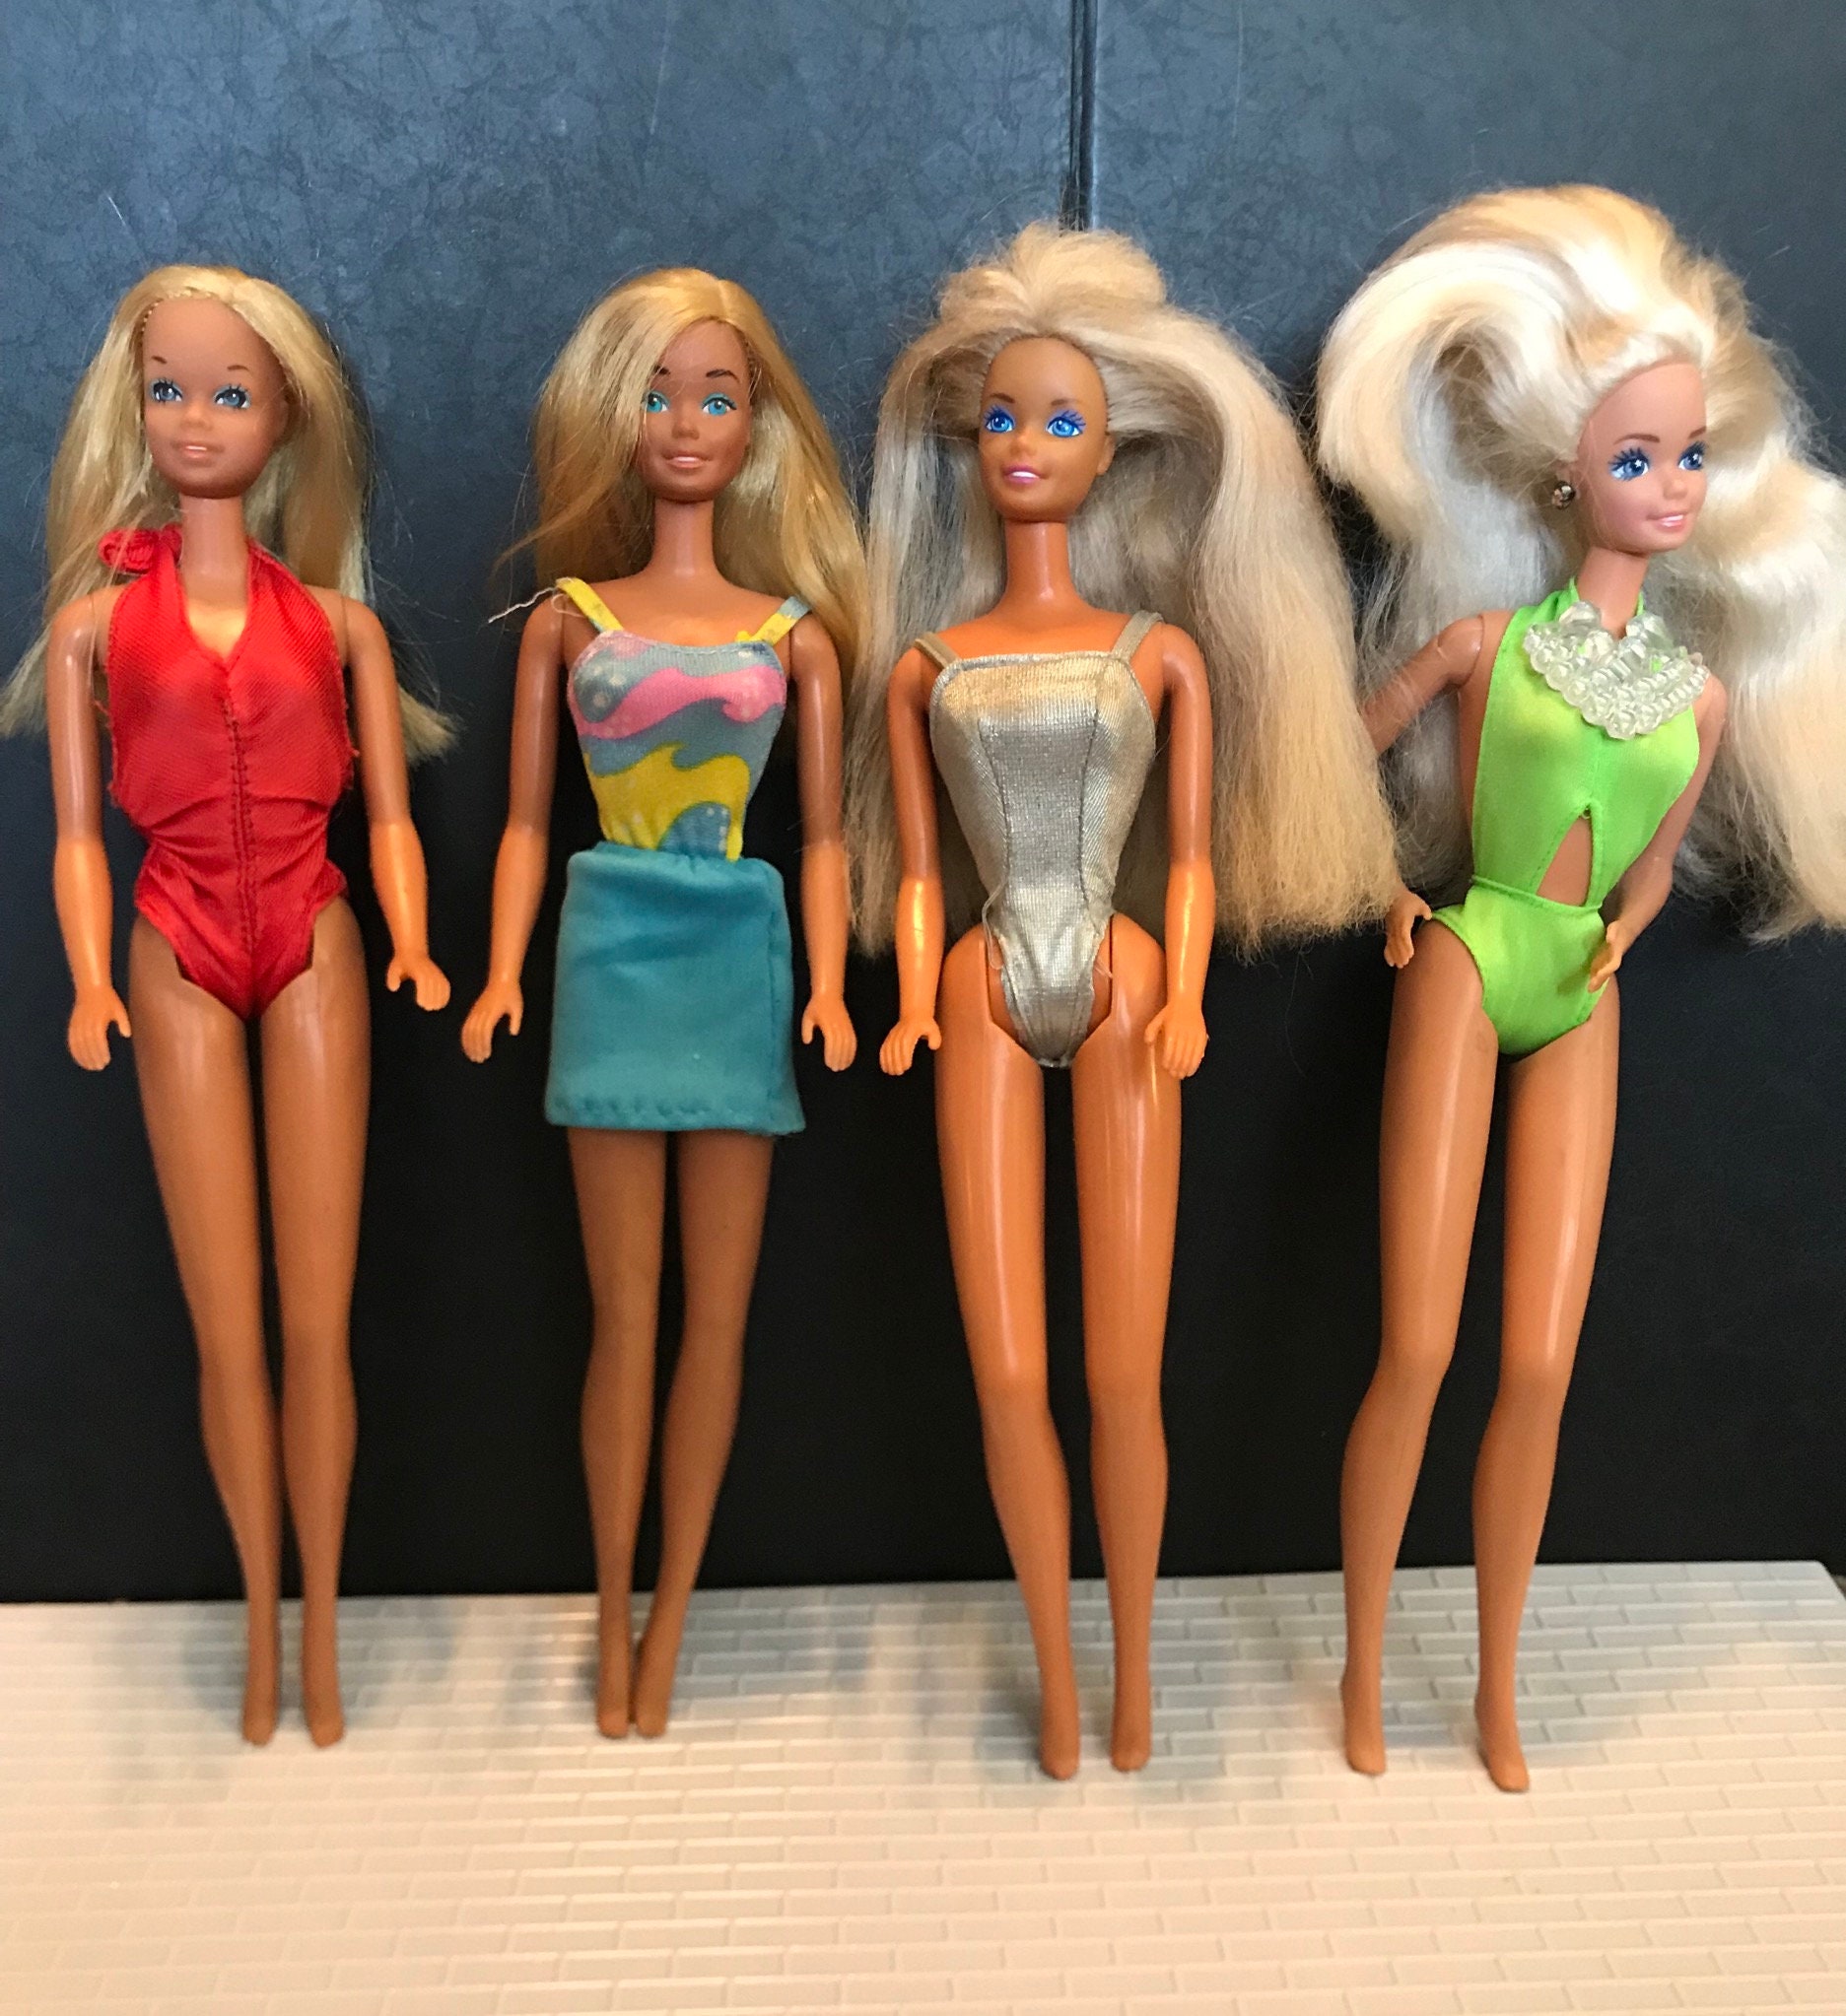 Barbie Roupas - Macacão Corrida Malibu 1959 - Original